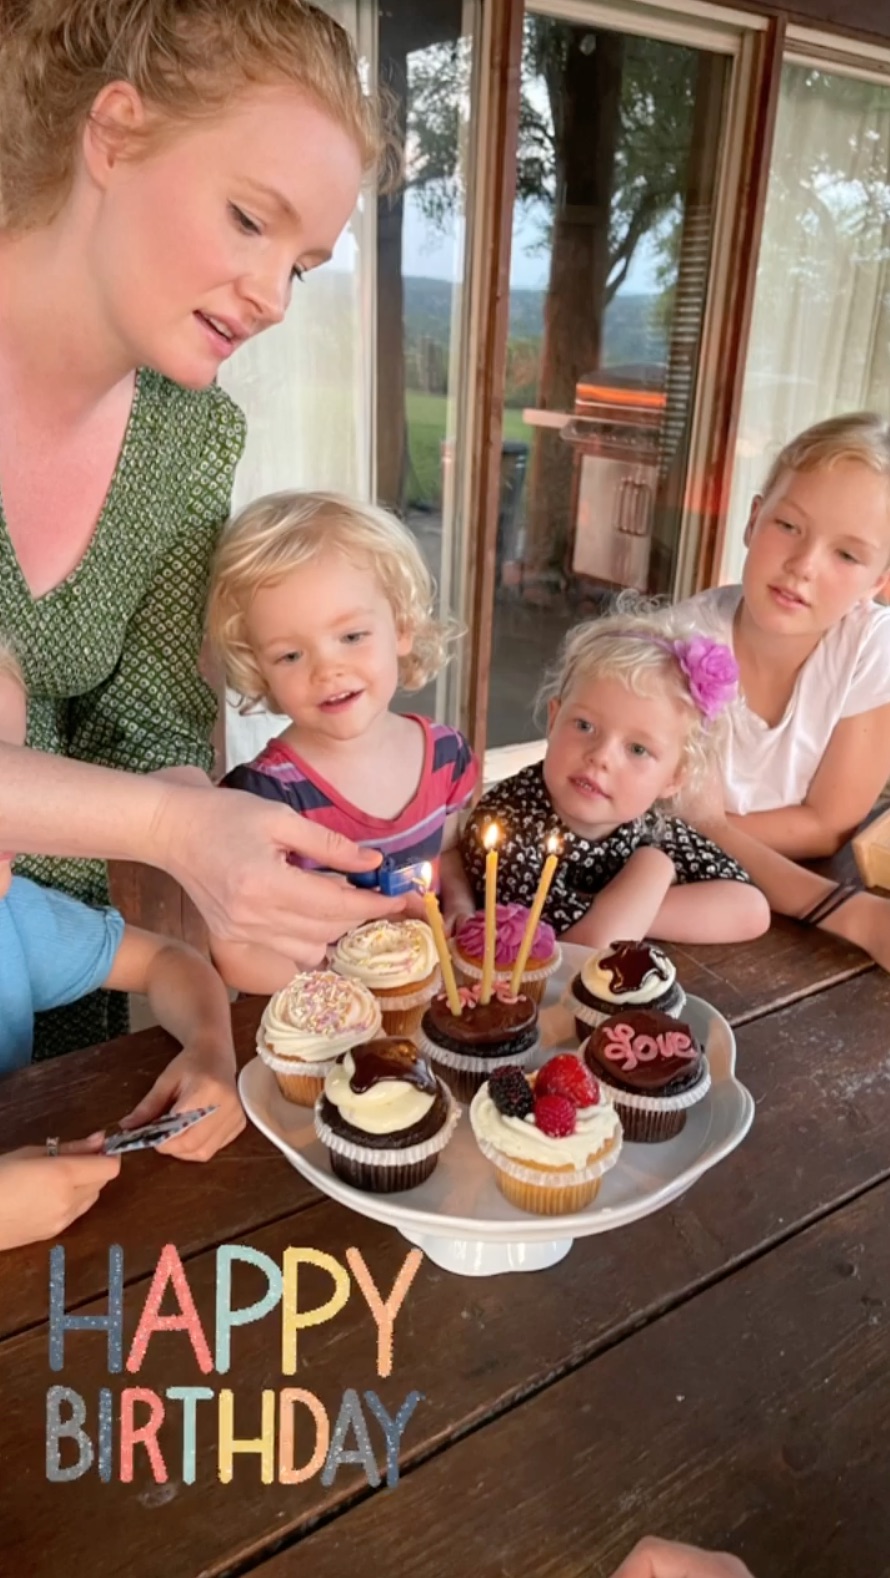 James Van Der Beek and More Stars Celebrate Kids' 2021 Birthdays